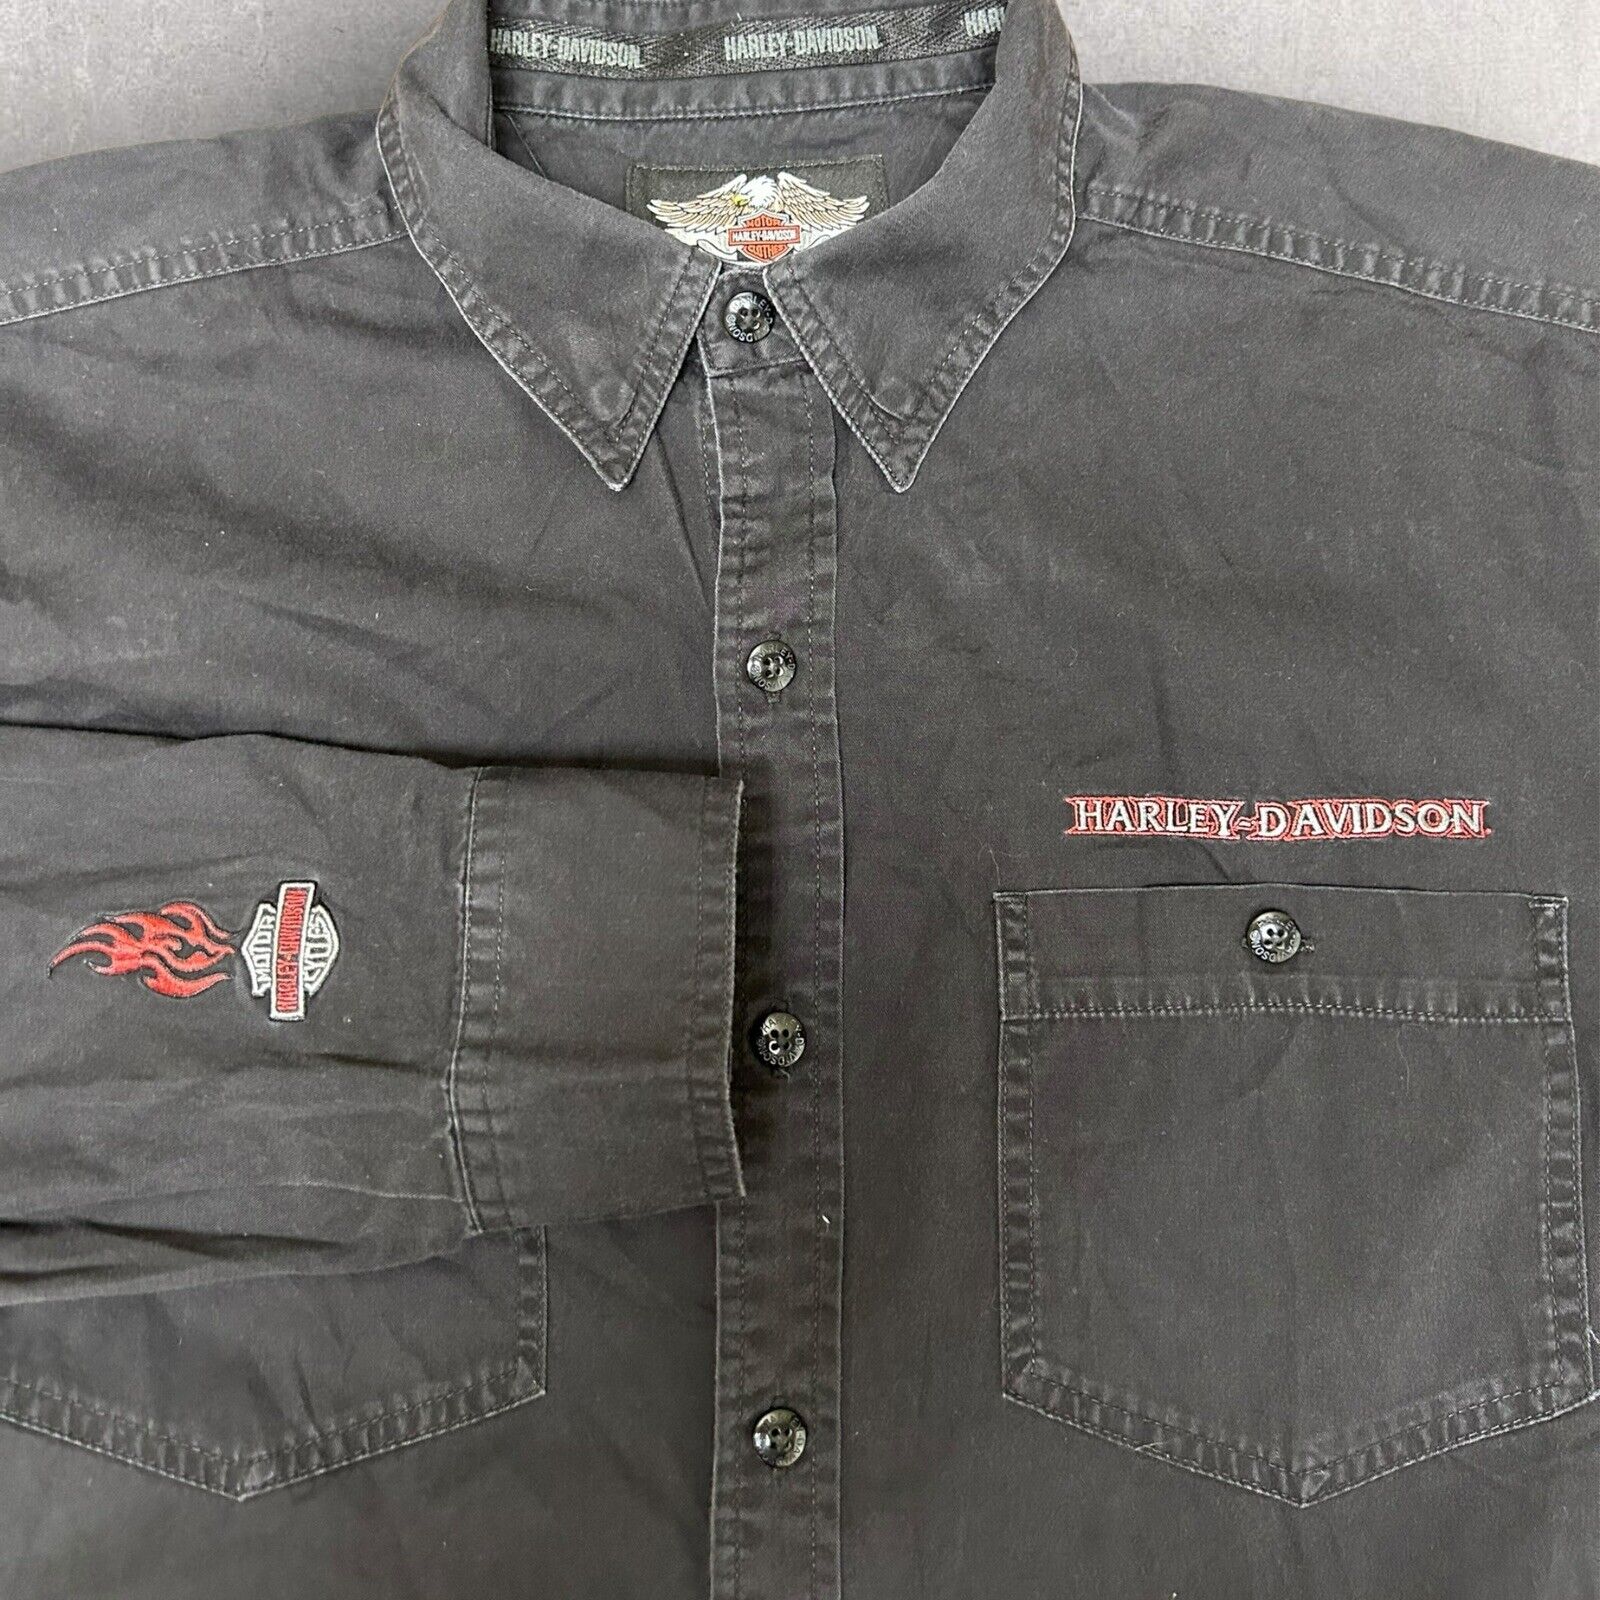 VTG Harley Davidson Button Up Shirt Flames Black Oversized Large Embroidered